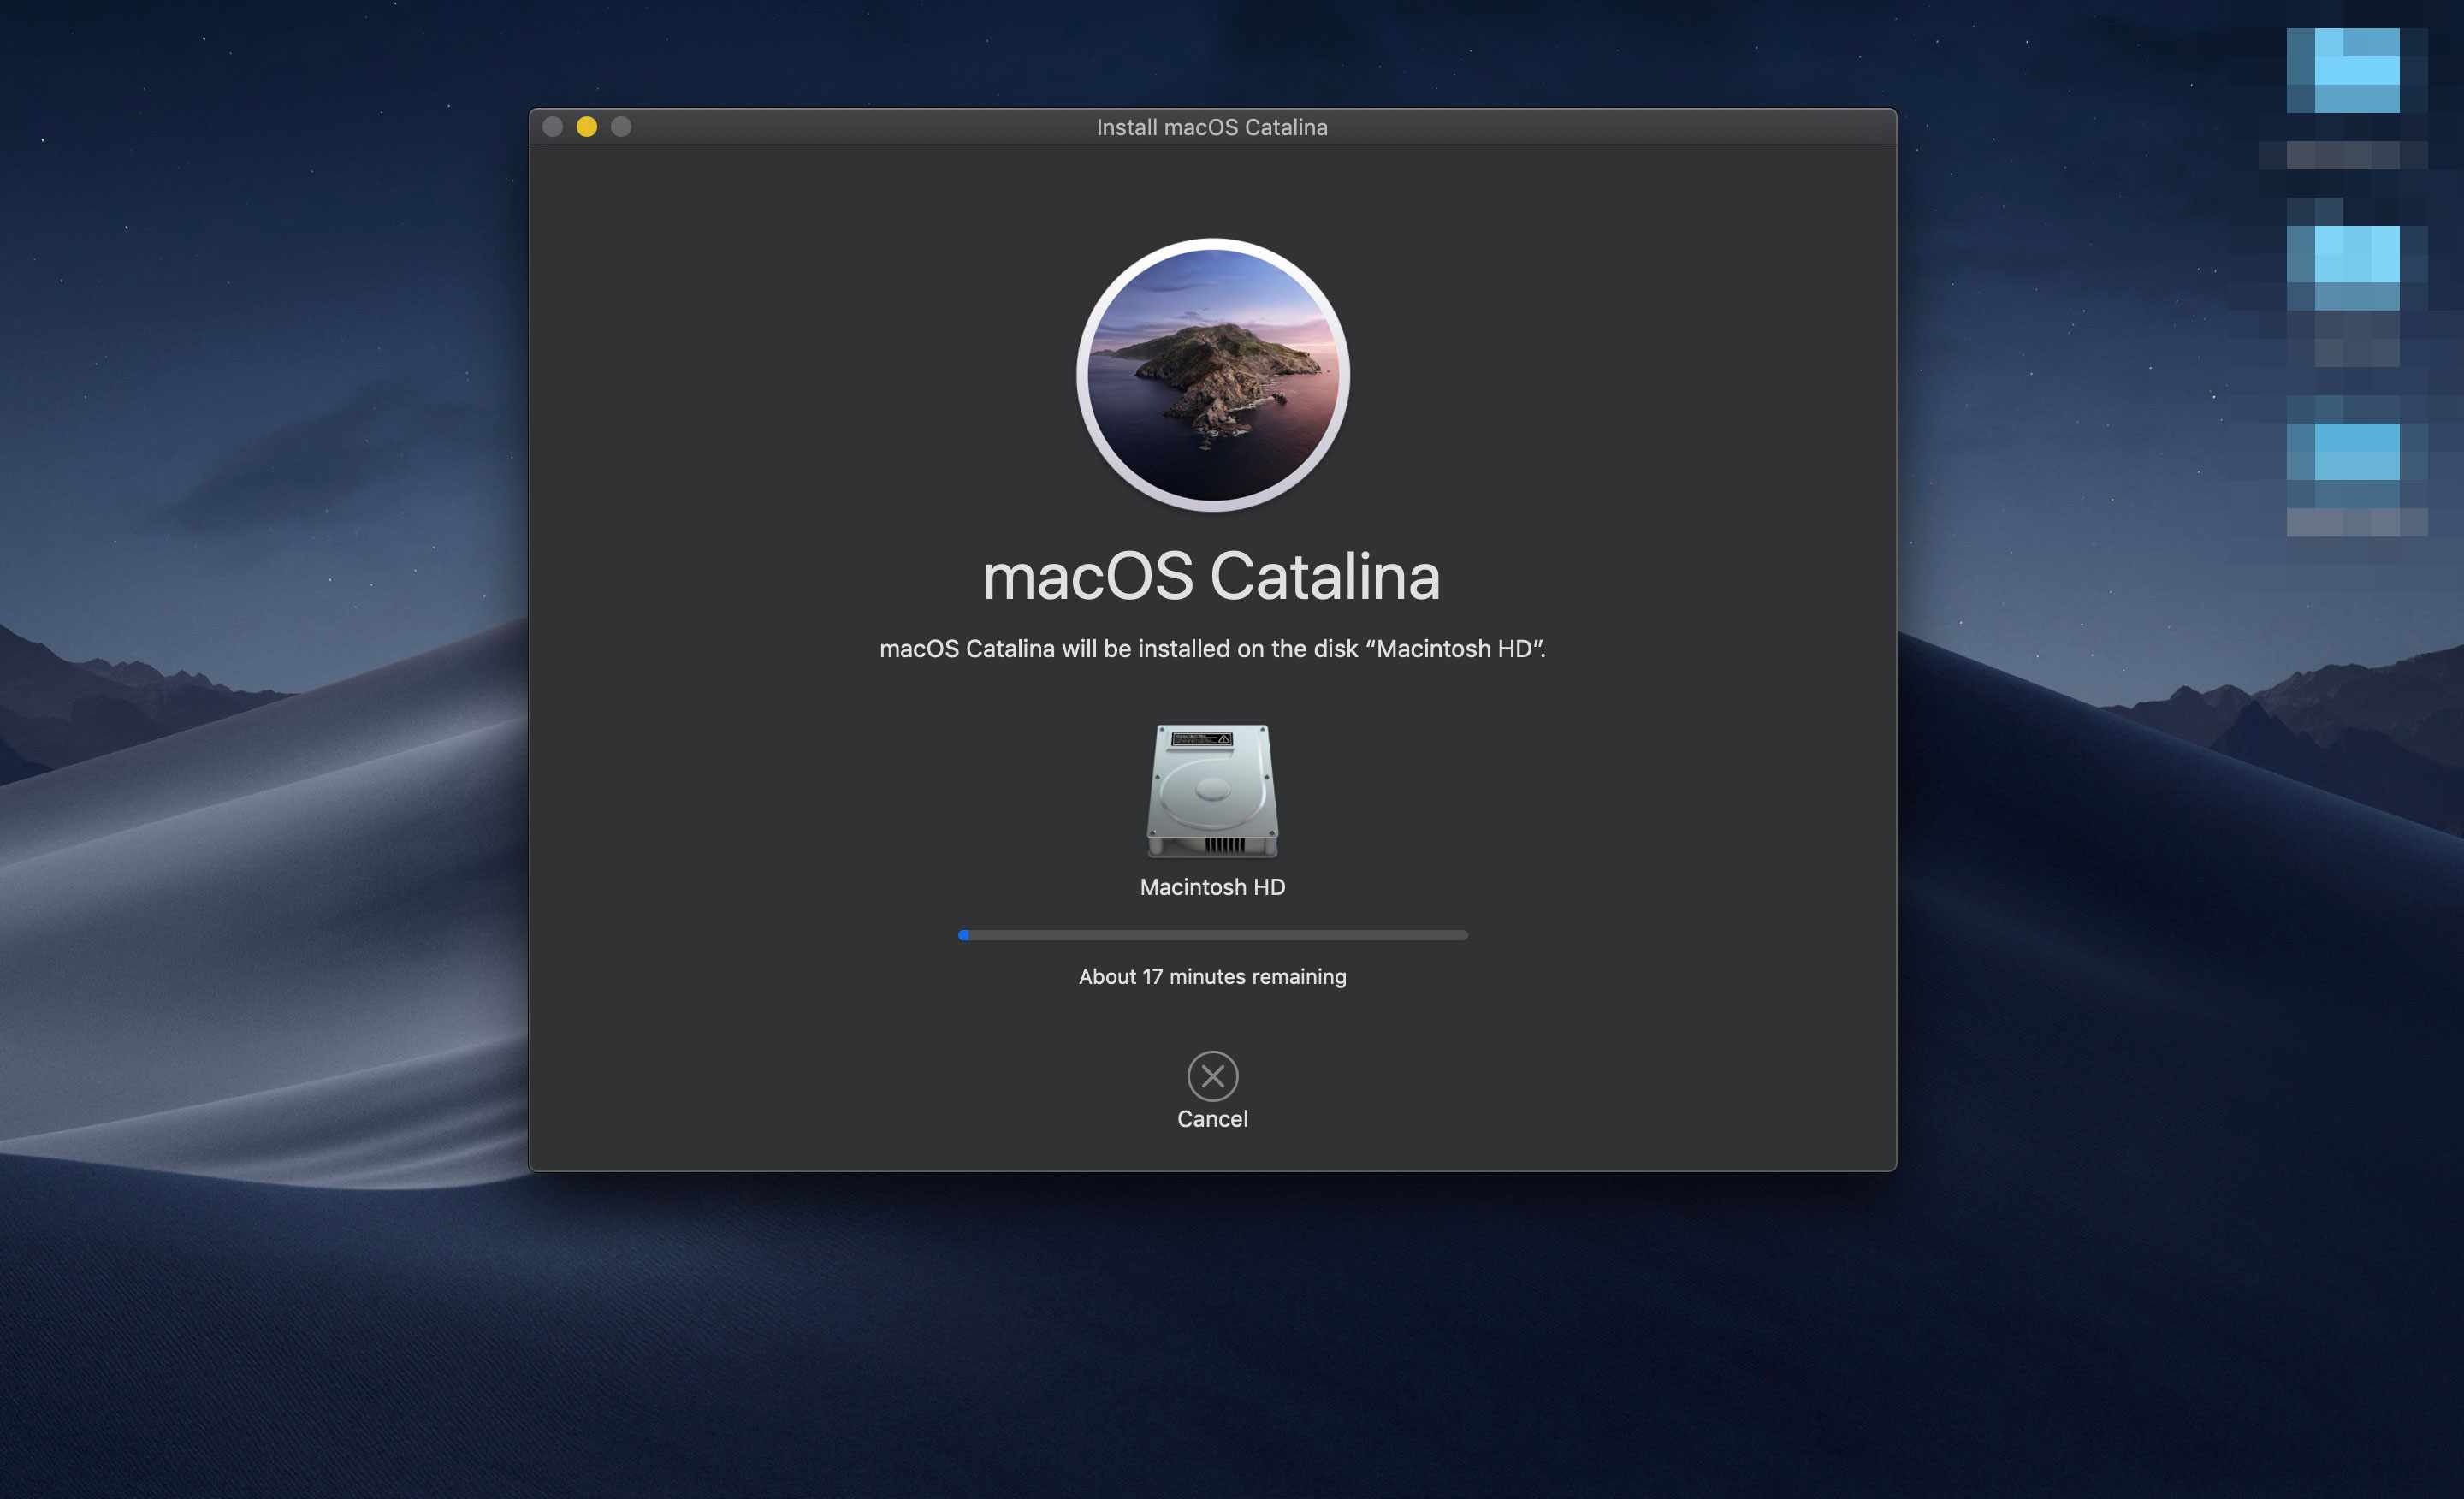 Instalace aplikace macOS Catalina provádějící upgrade